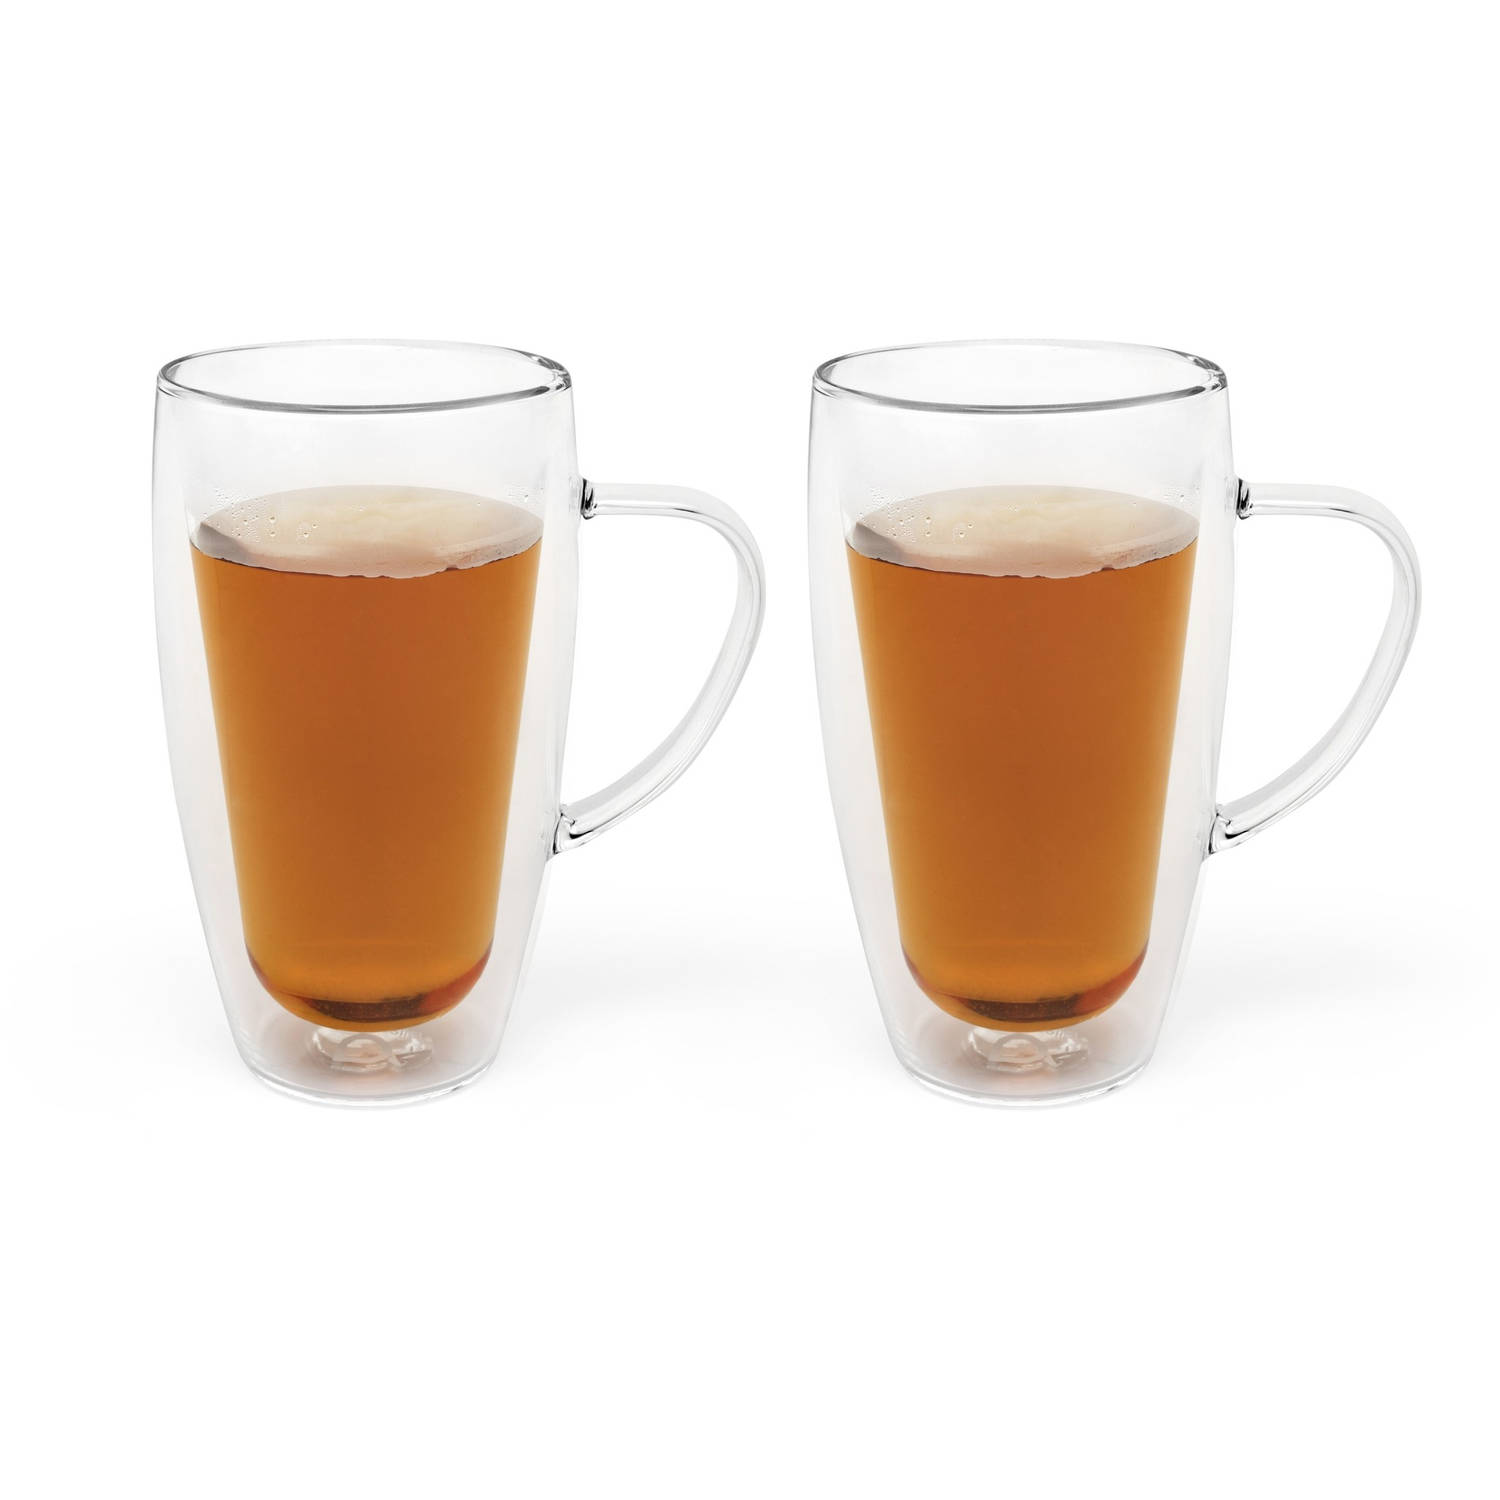 Bredemeijer - Dubbelwandig glas koffie/thee 320ml (set van twee stuks)